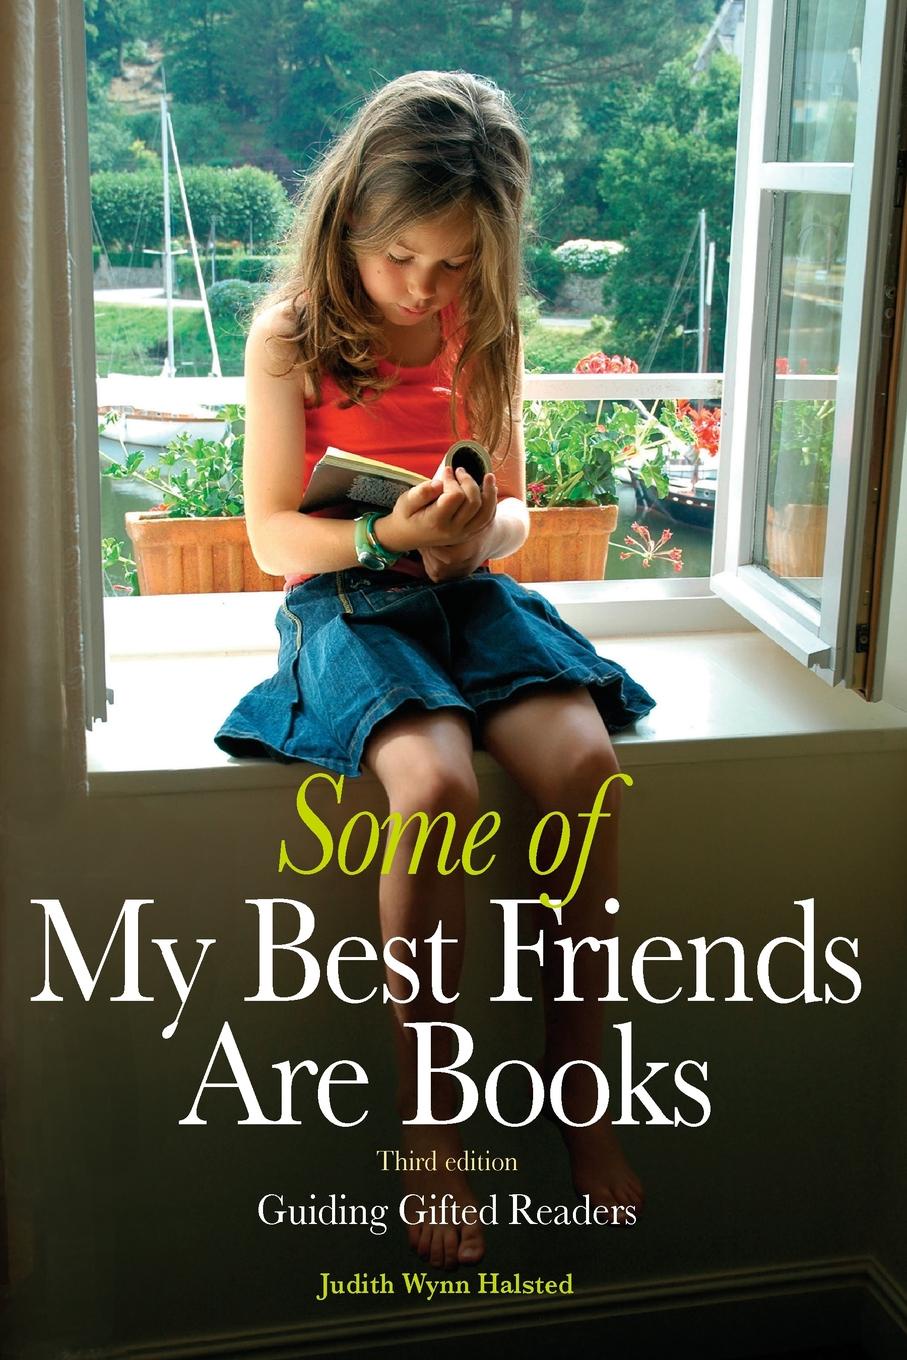 Books and friends. Book is best friend. Books are my best friends. My best friend book. The best friend book.